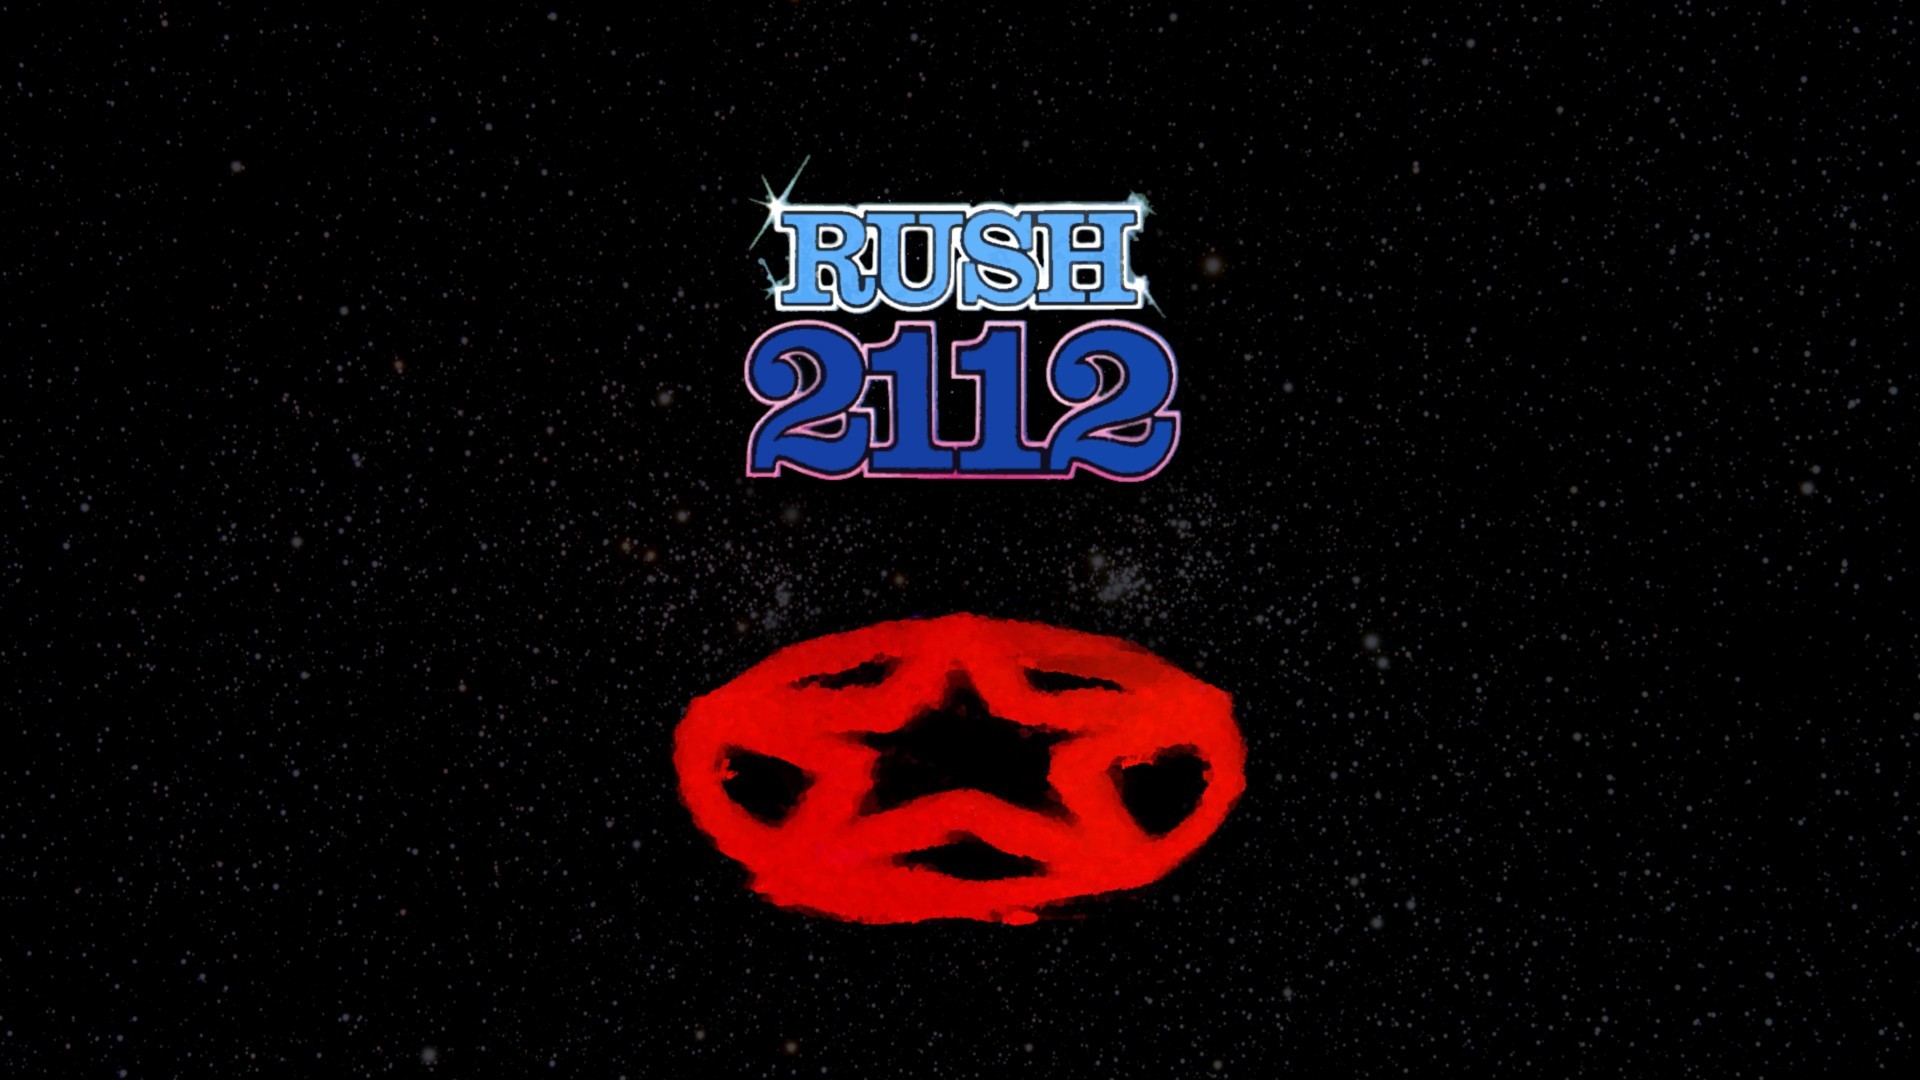 Music Bands Album Covers Rush Wallpaper - Rush 2112 - HD Wallpaper 